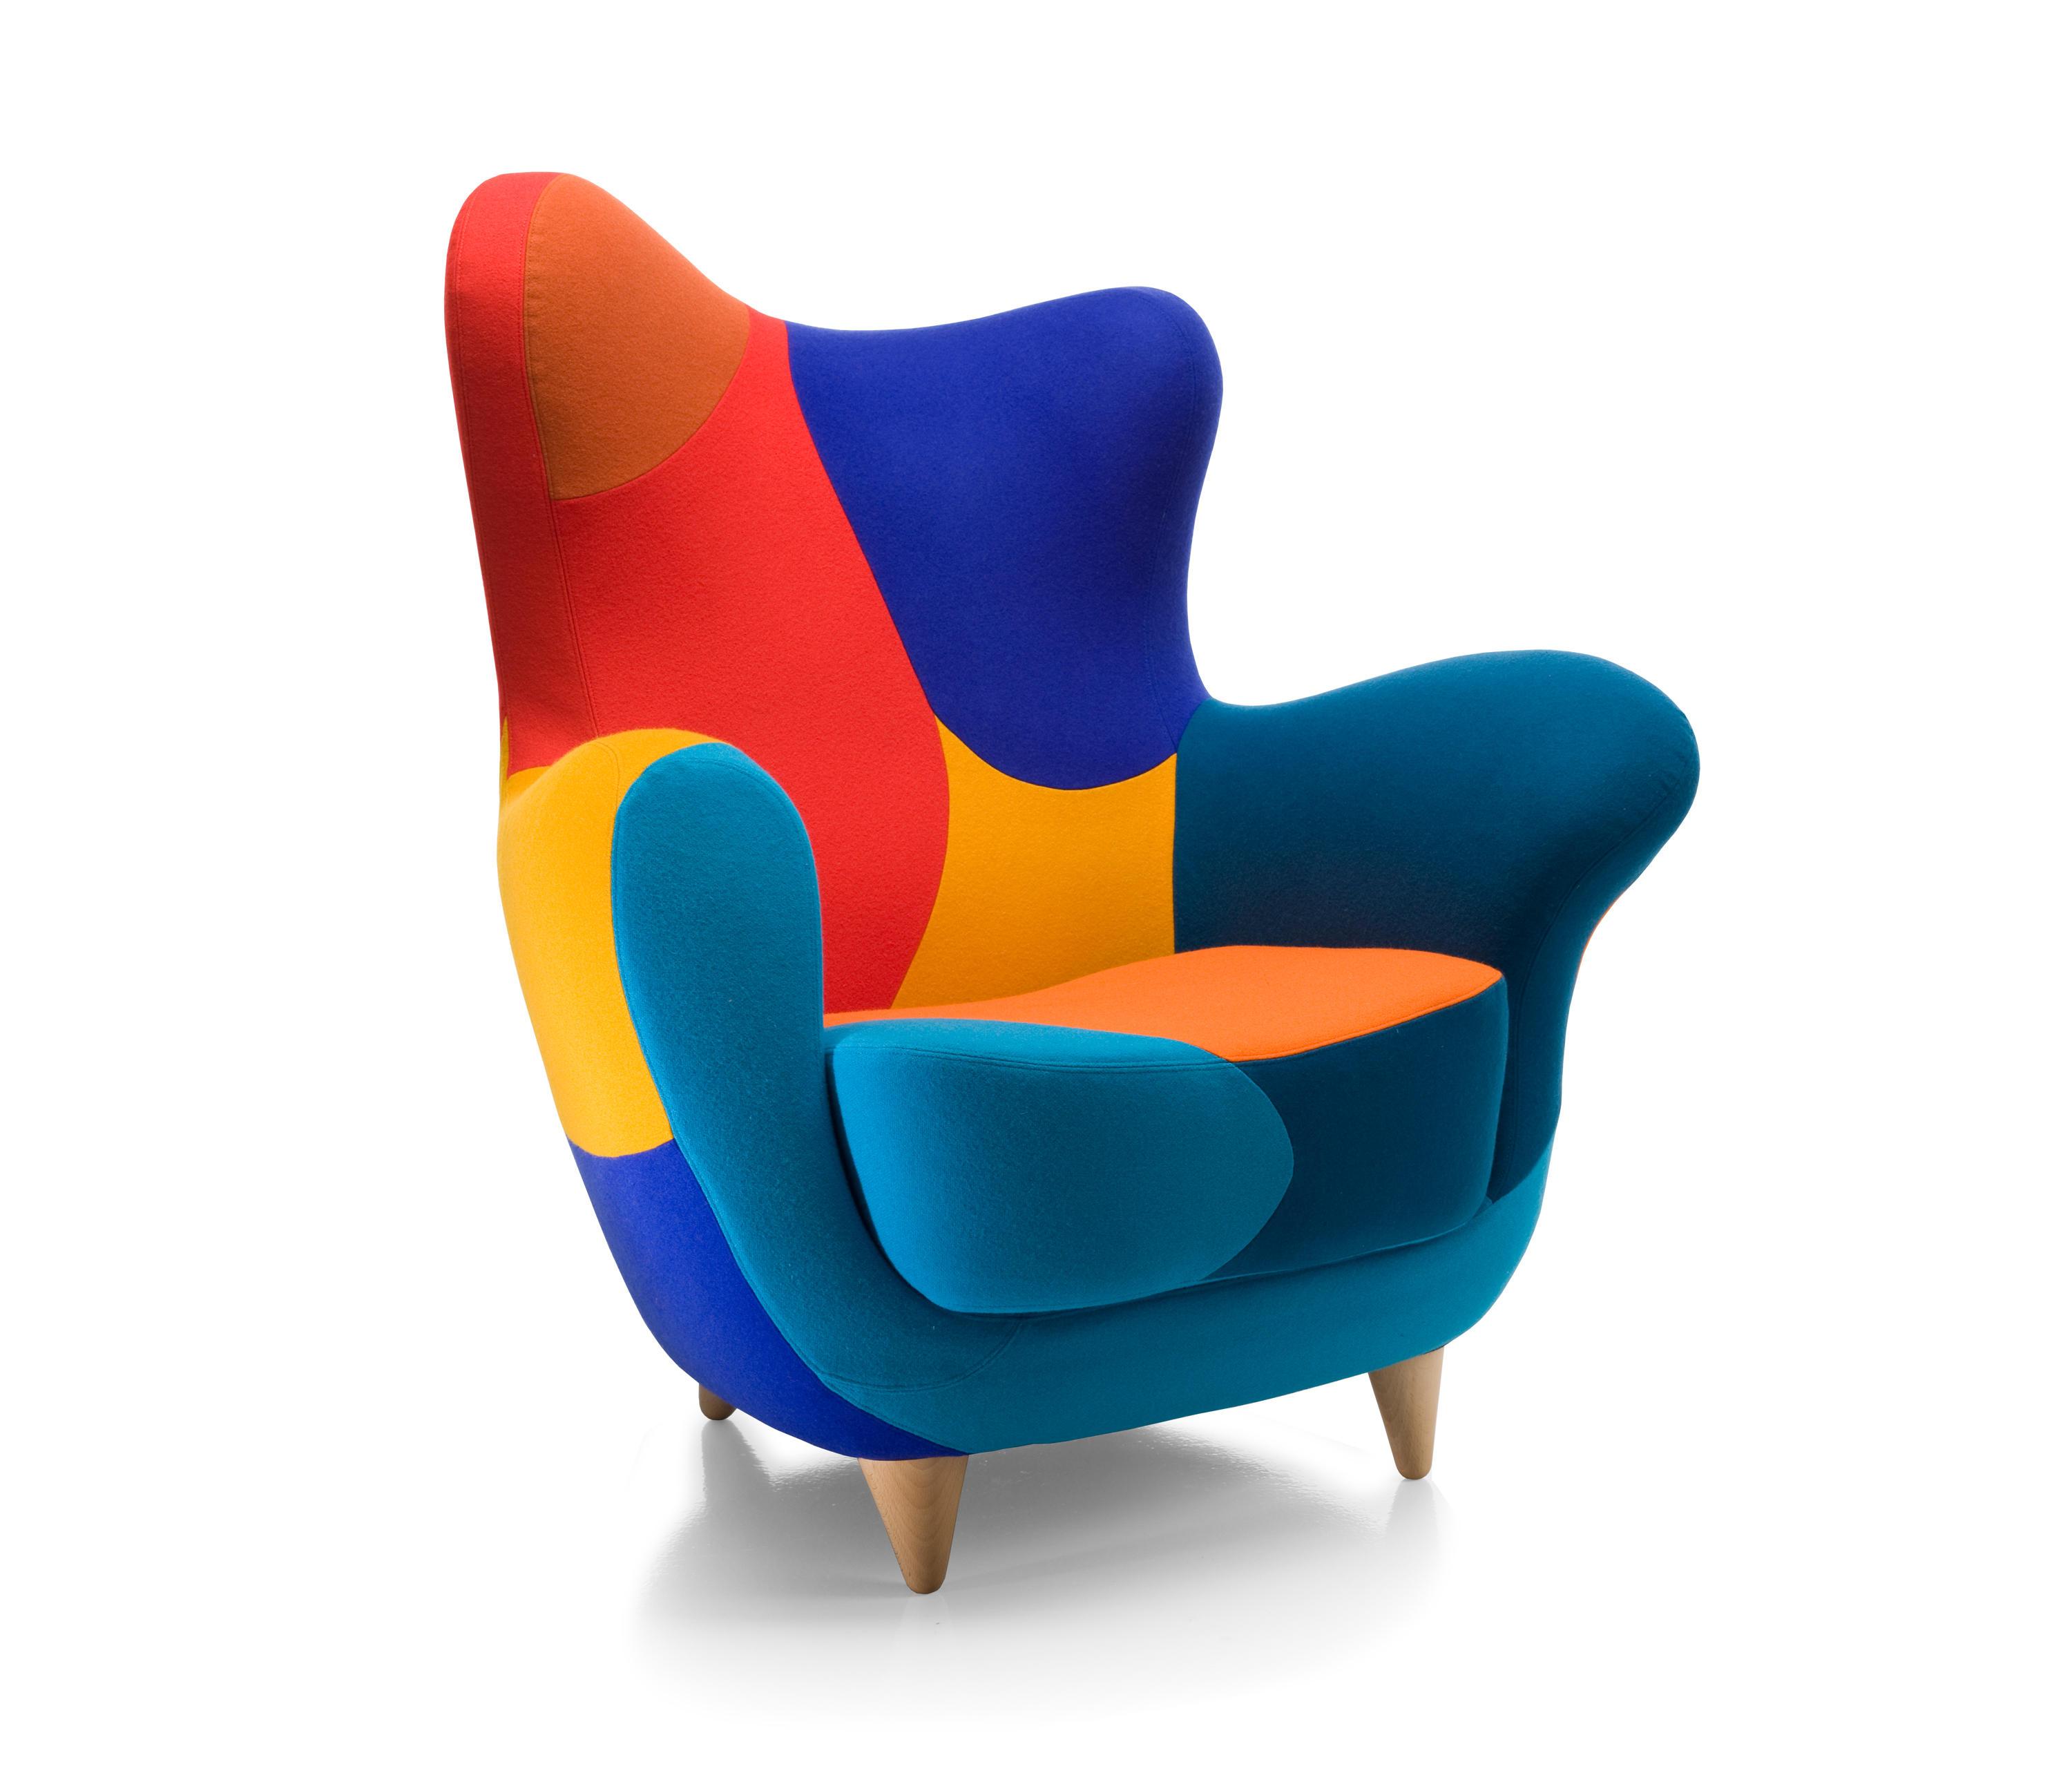 Разноцветные кресла в интерьере